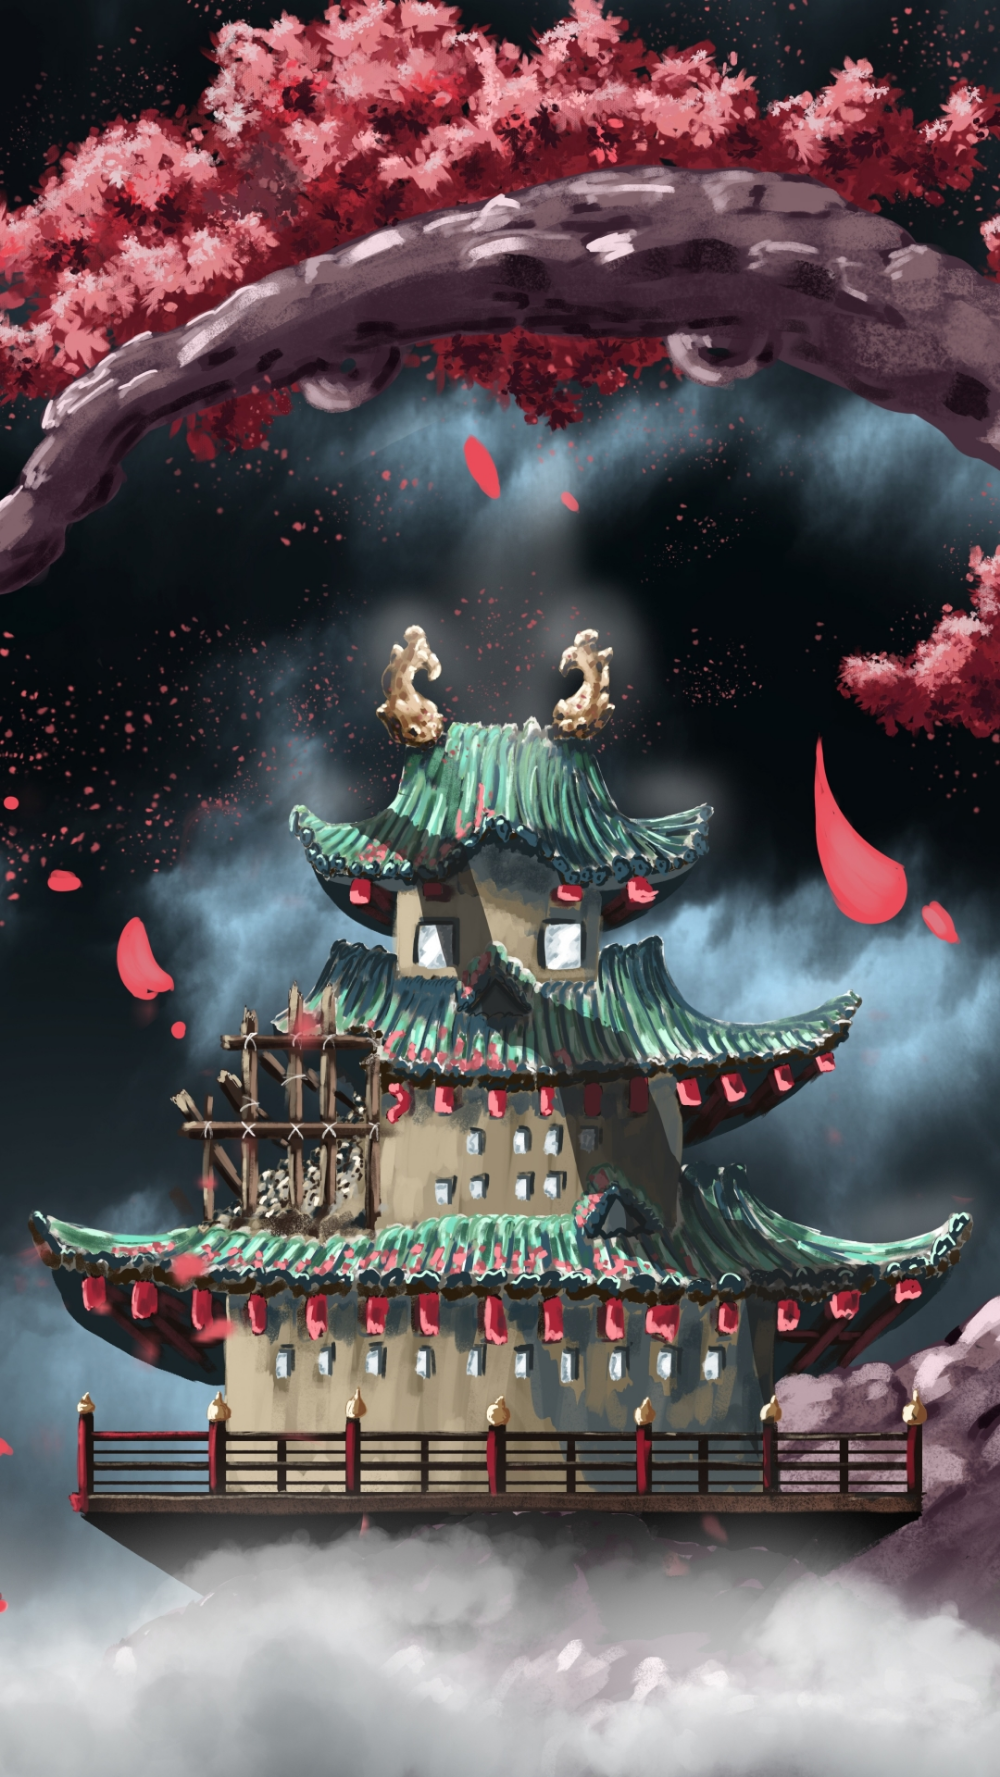 Wano Temple Anime One Piece (1080x1920) Mobile Wallpaper. Fond d'ecran dessin, Fond d'écran téléphone, Japon paysage